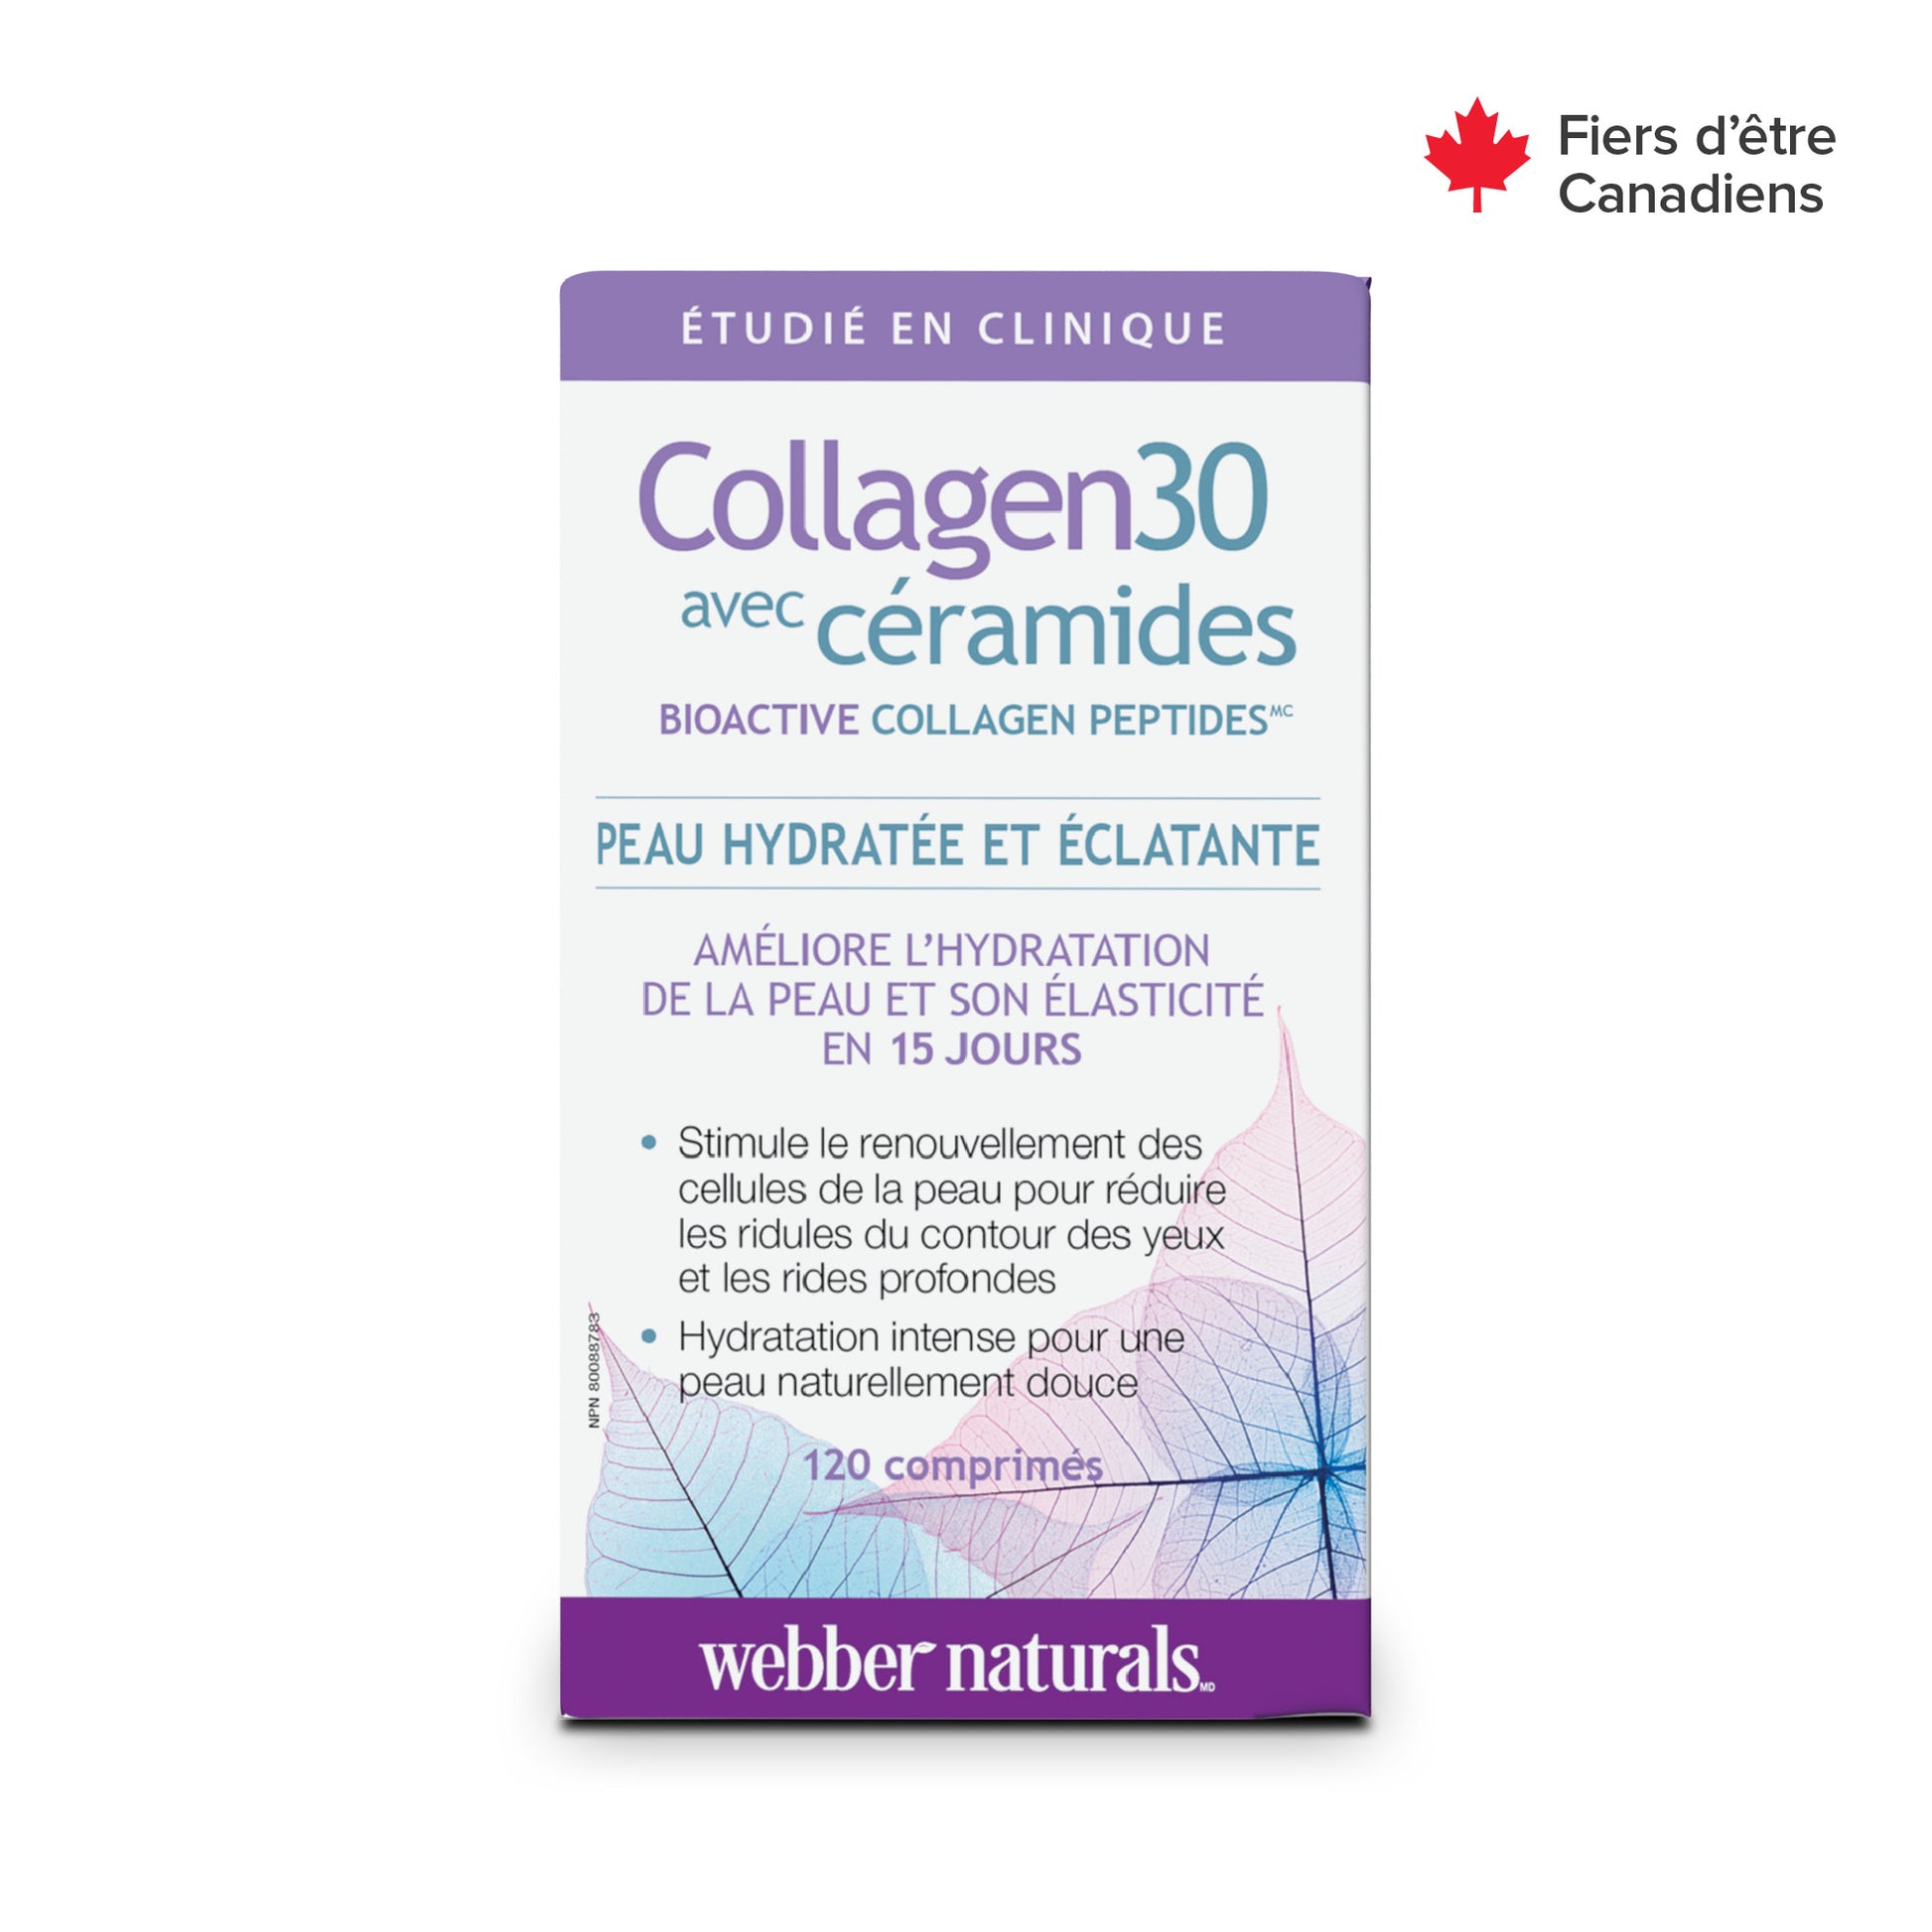 Collagen30 avec céramides Bioactive Collagen Peptides for Webber Naturals|v|hi-res|WN3669